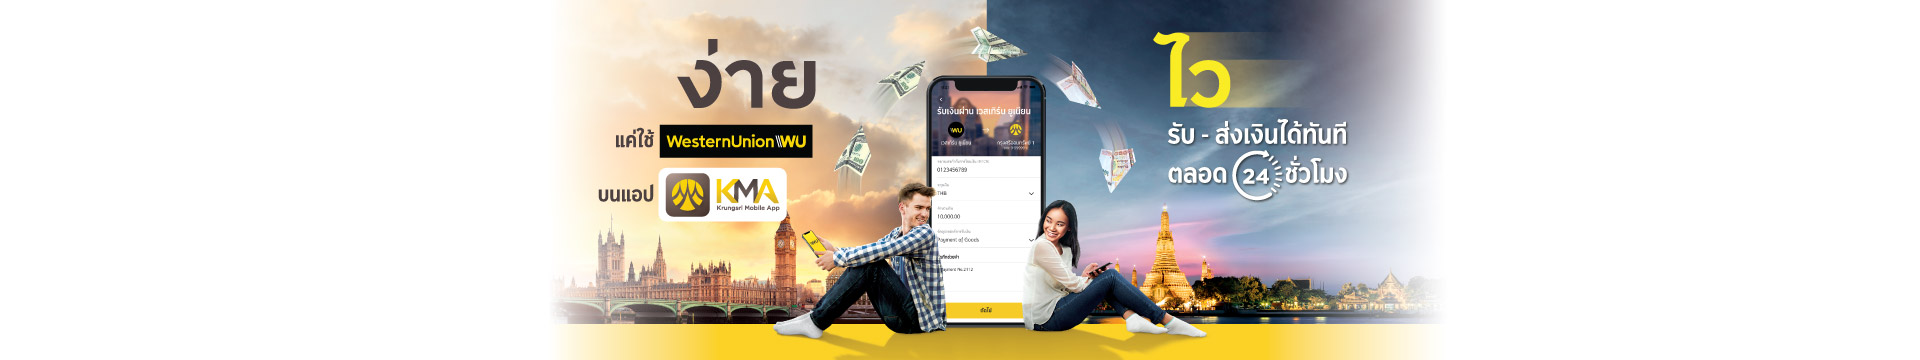 โอนเงินผ่าน Western Union บน KMA krungsri app ได้ตลอด 24 ชม. ไม่ต้องรอ 